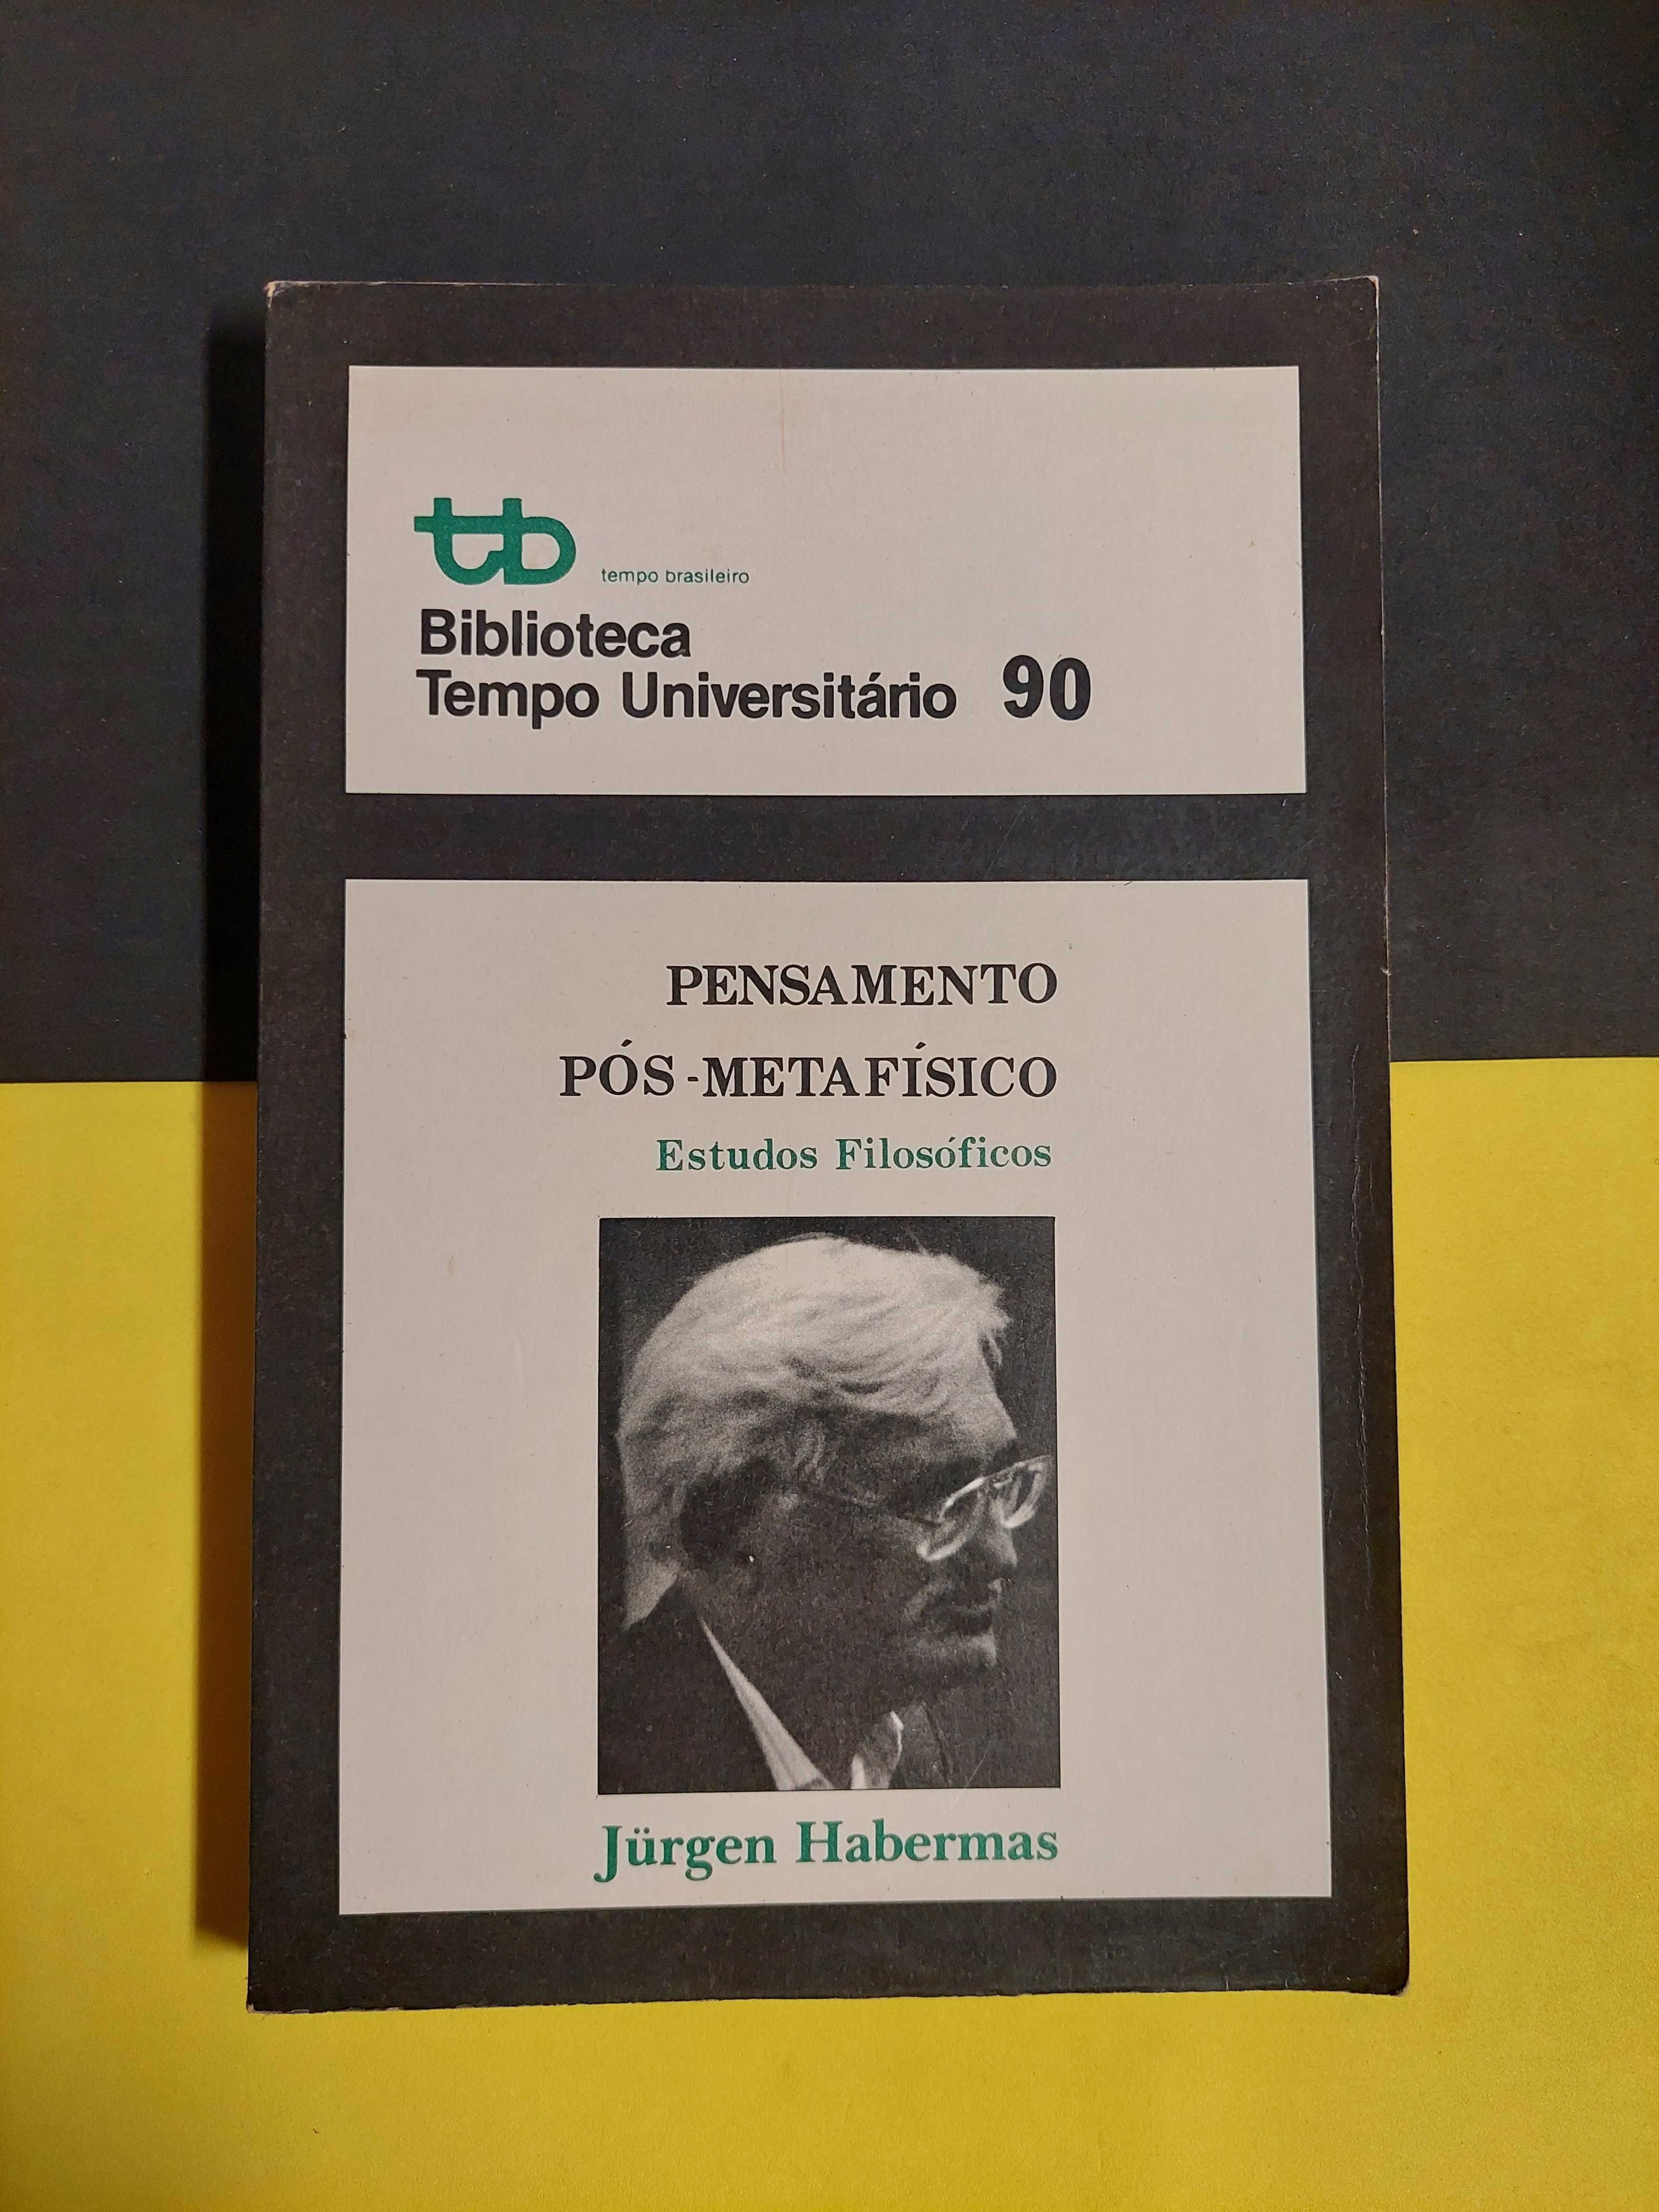 Jurgen Habermas - Pensamento pós-metafísico